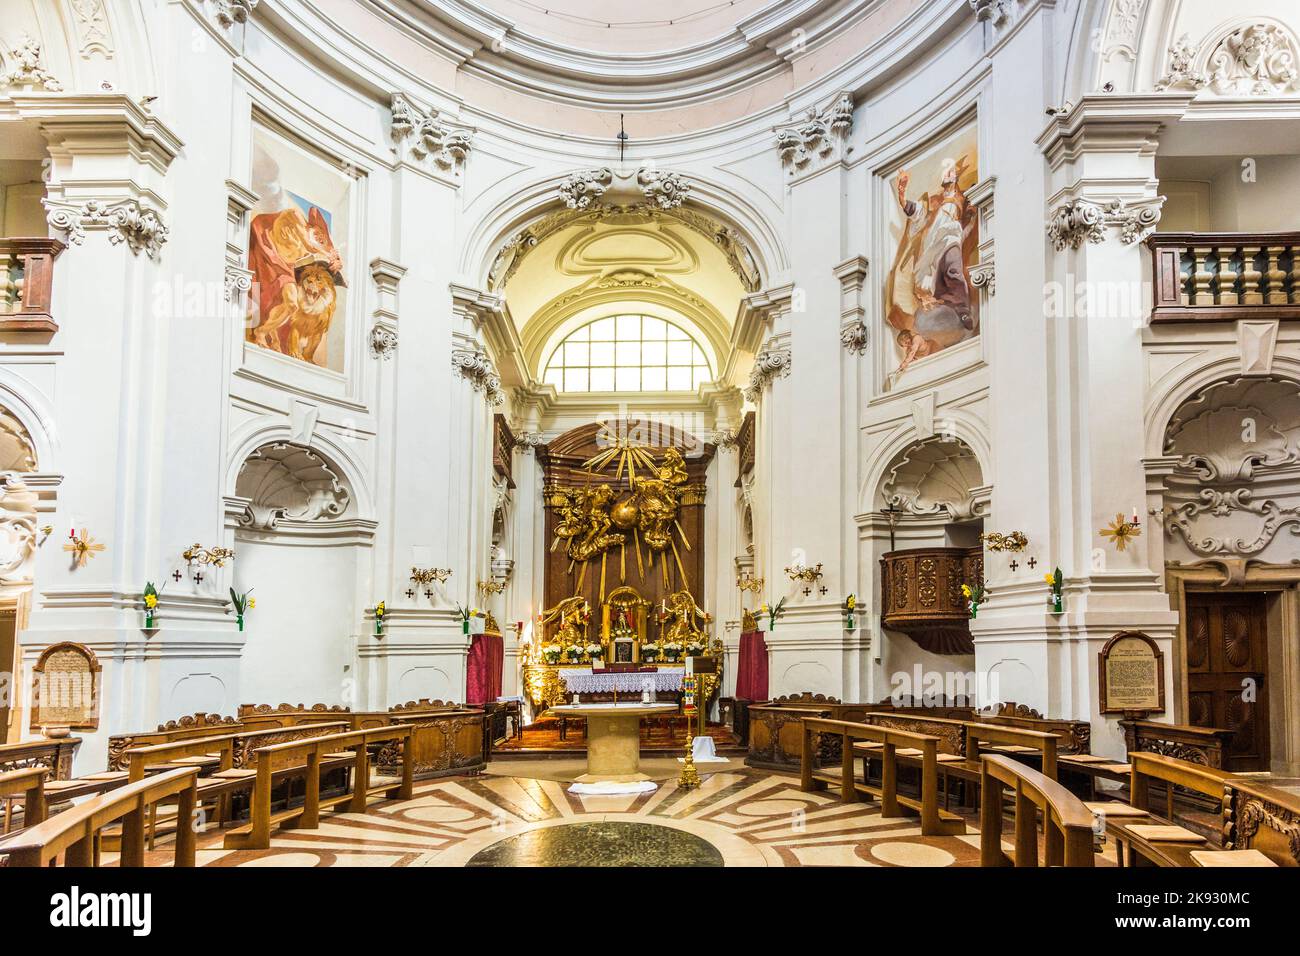 SALZBURG, ÖSTERREICH - APR 21, 2015: Innerhalb der Dreifaltigkeitskirche in Salzburg, Österreich. Die Kirche wurde zwischen 1694 und 1702 erbaut. Stockfoto